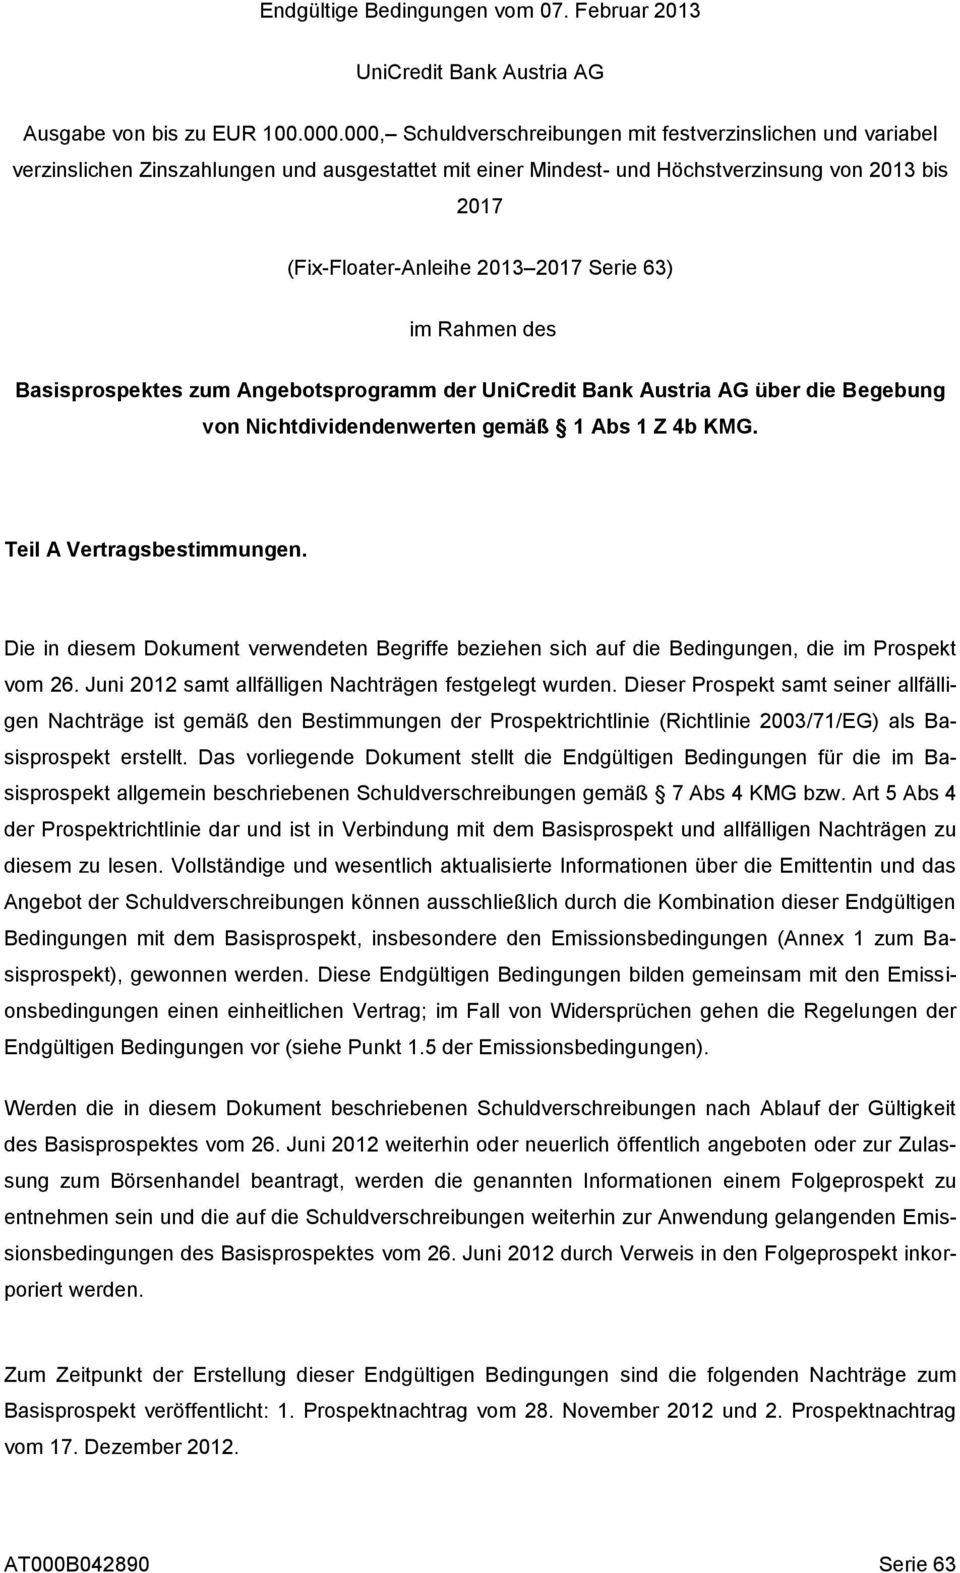 Serie 63) im Rahmen des Basisprospektes zum Angebotsprogramm der UniCredit Bank Austria AG über die Begebung von Nichtdividendenwerten gemäß 1 Abs 1 Z 4b KMG. Teil A Vertragsbestimmungen.